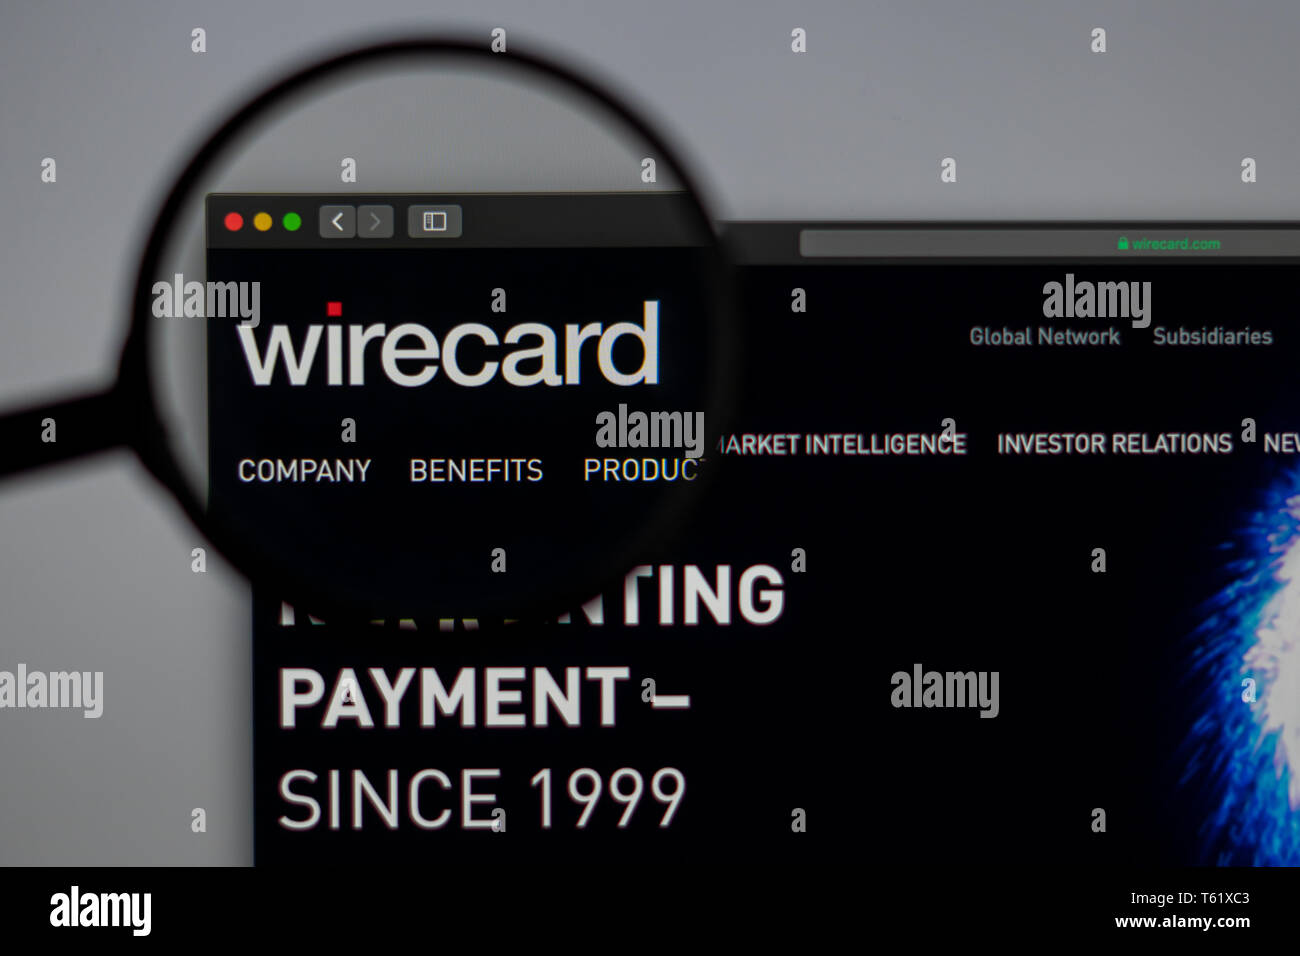 Wirecard Startseite. Nahaufnahme von Wirecard Logo. Kann als illustrative für Medien, Marketing oder Business Konzept verwendet werden. Stockfoto